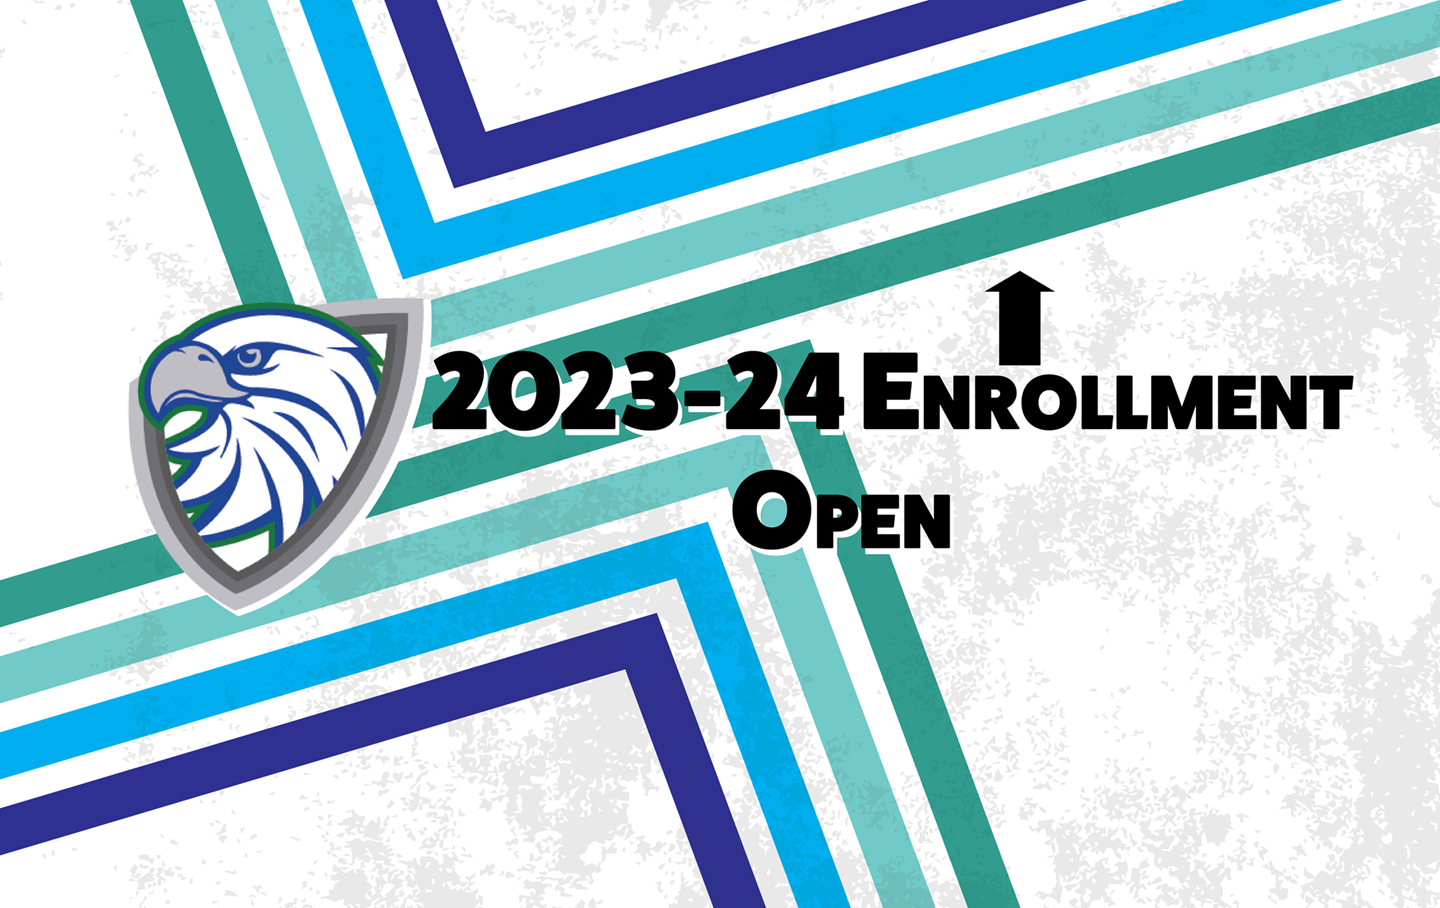 Enrollment is Open!